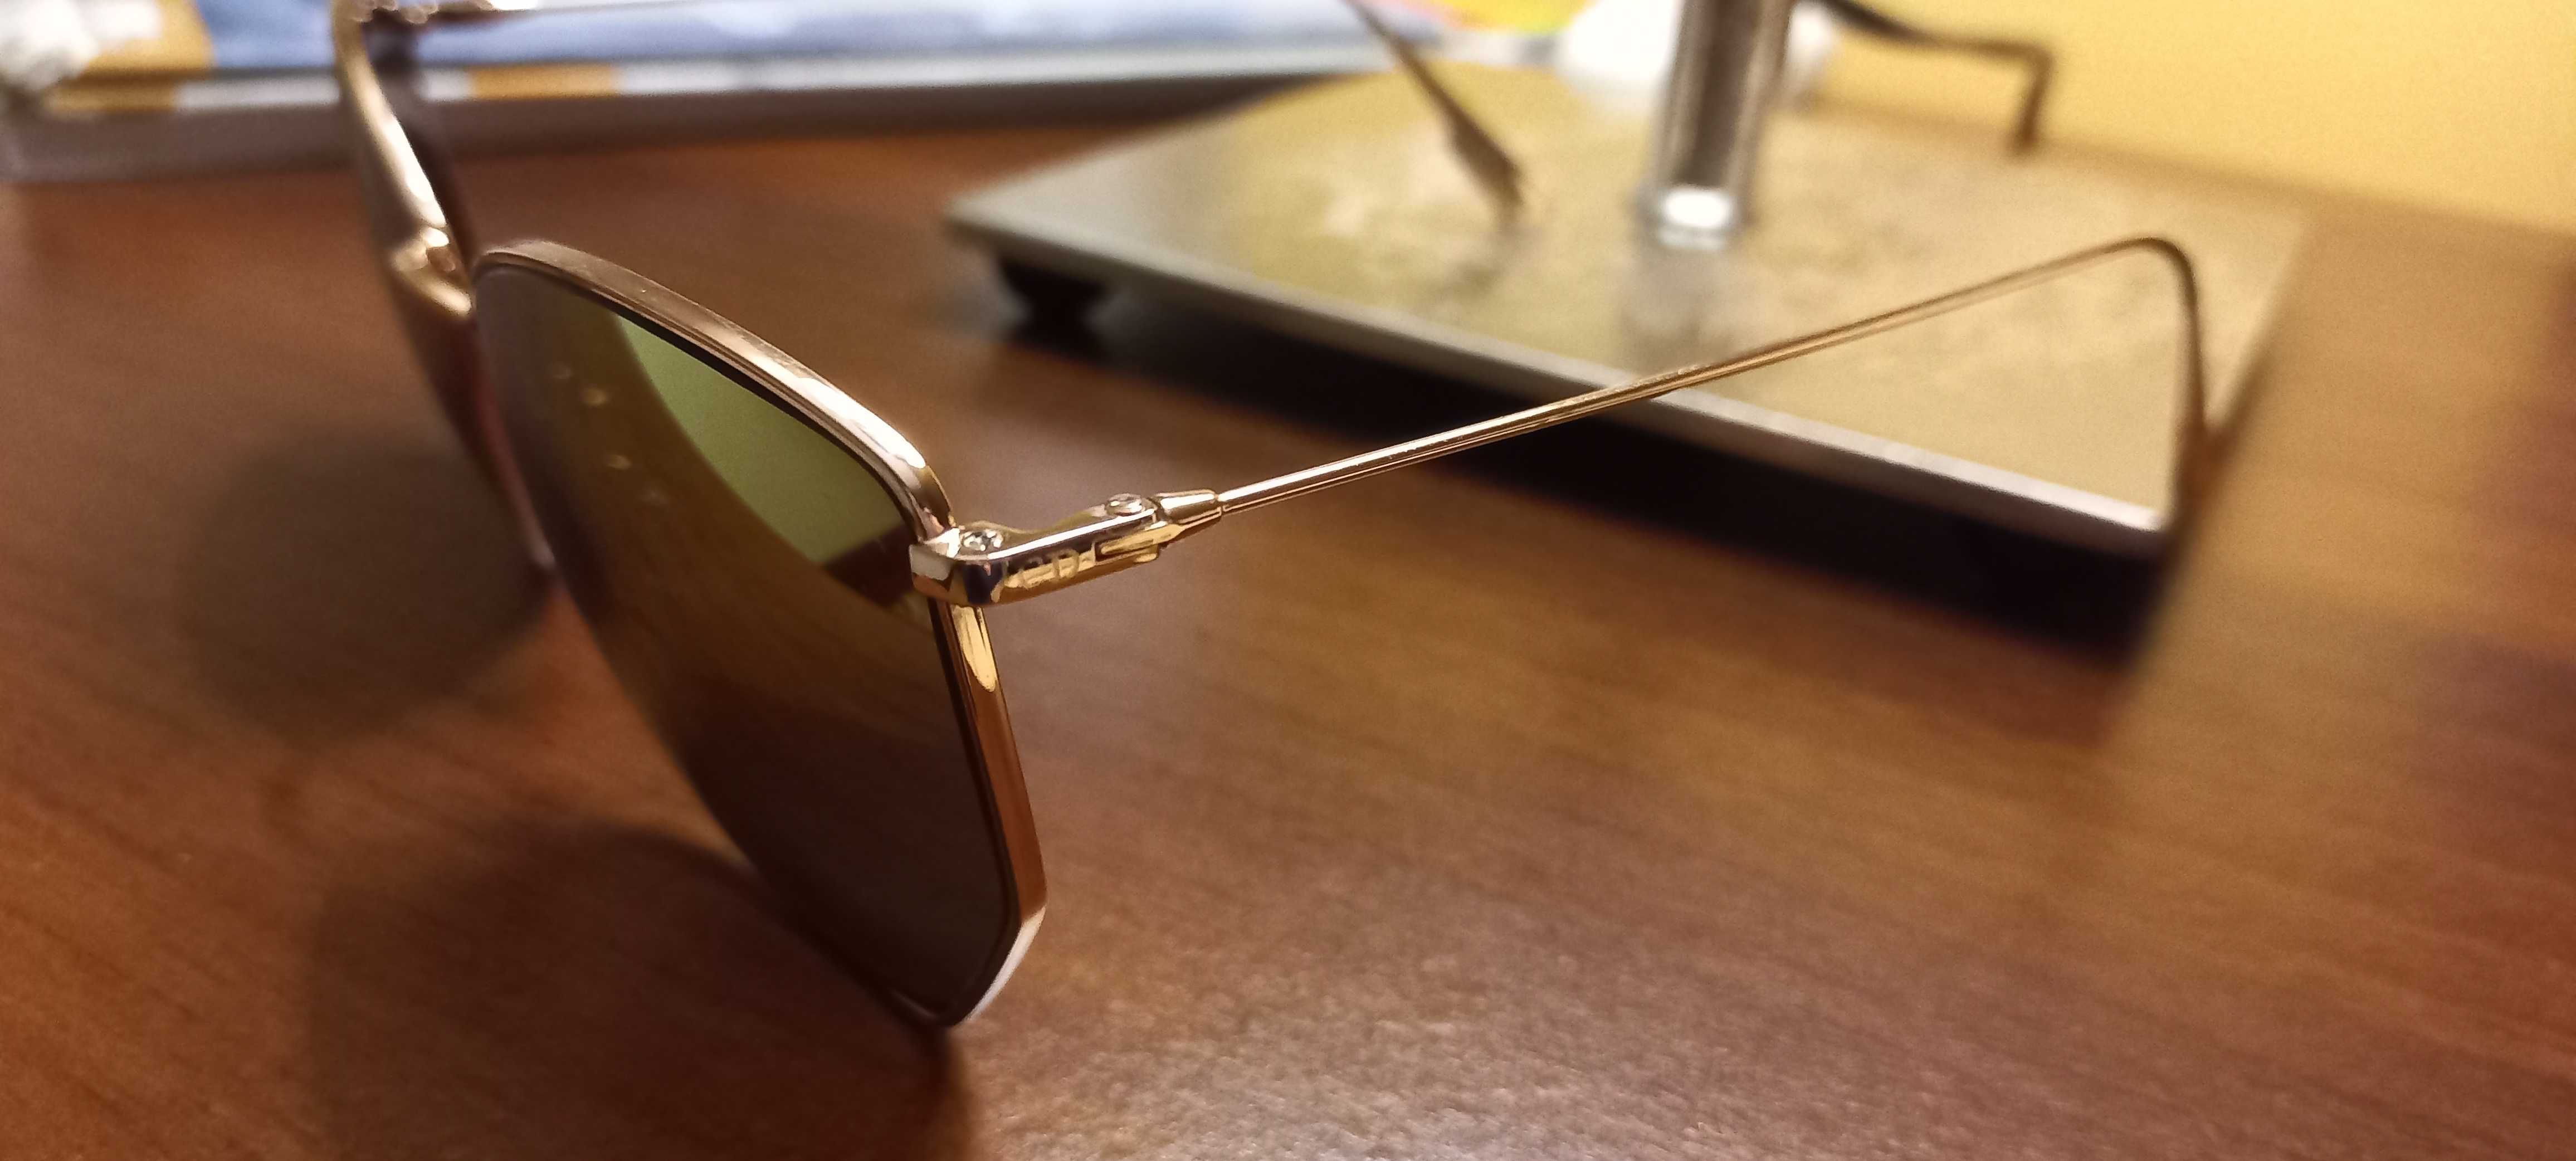 Oculos de sol dior personalizado c lentes polarizadas espelhadas